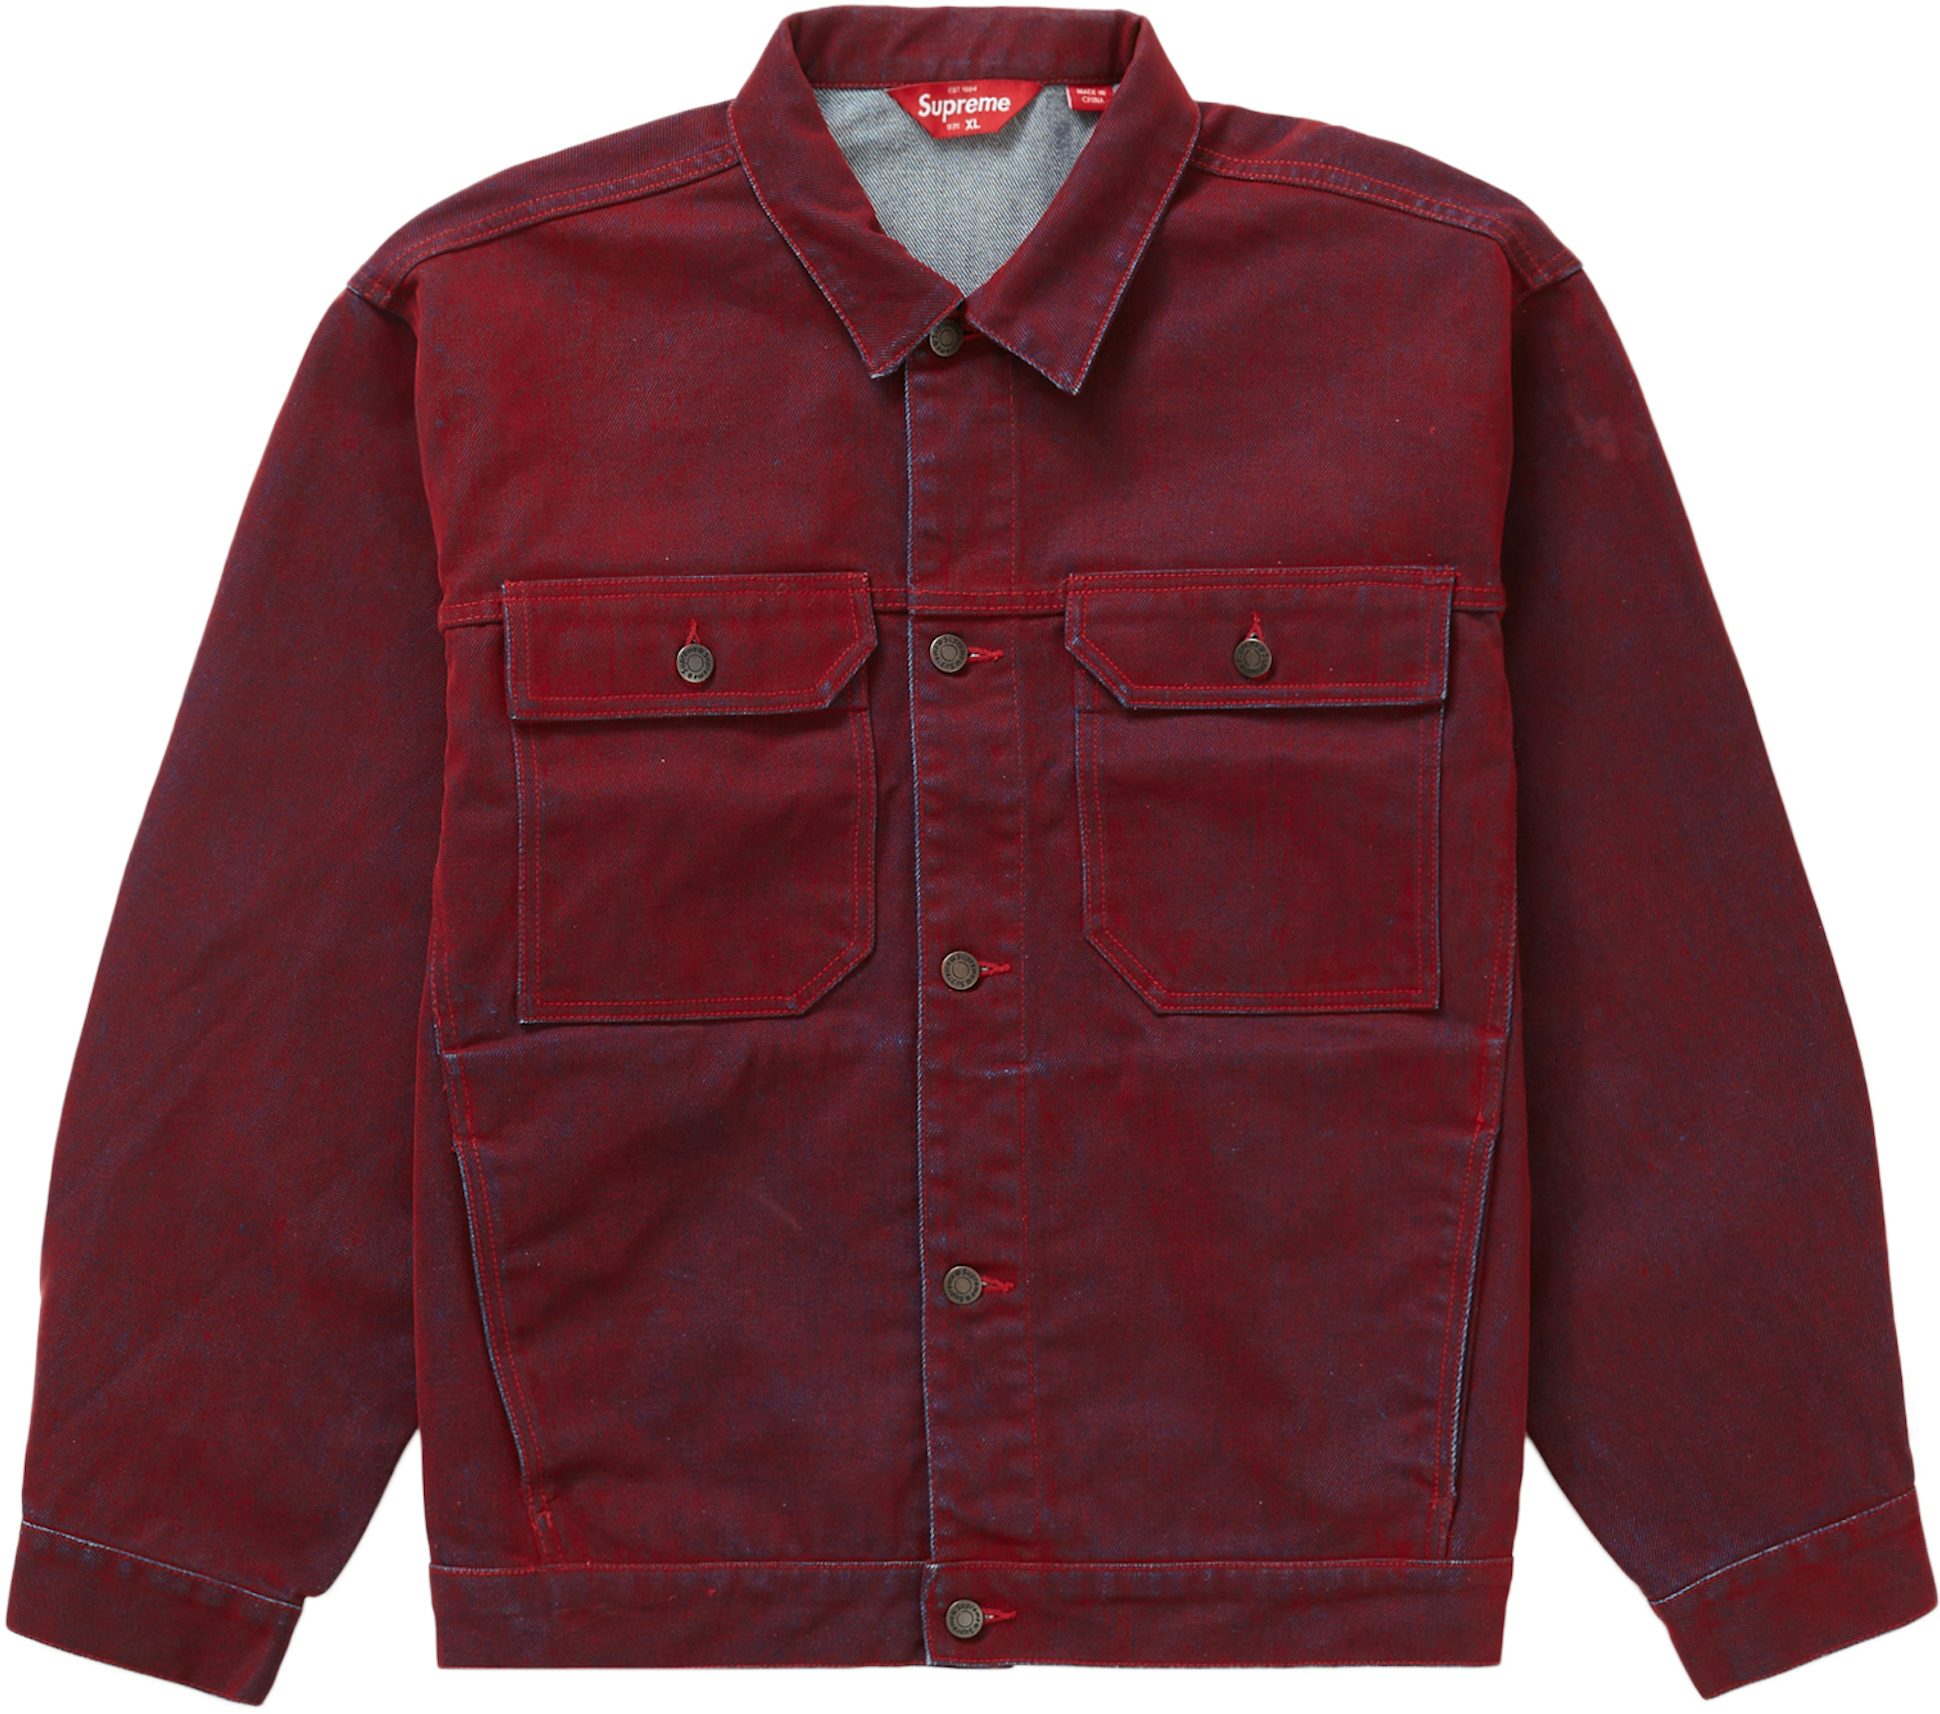 Supreme Red Denim Coats, Jackets & Vests for Men for Sale, Shop New & Used